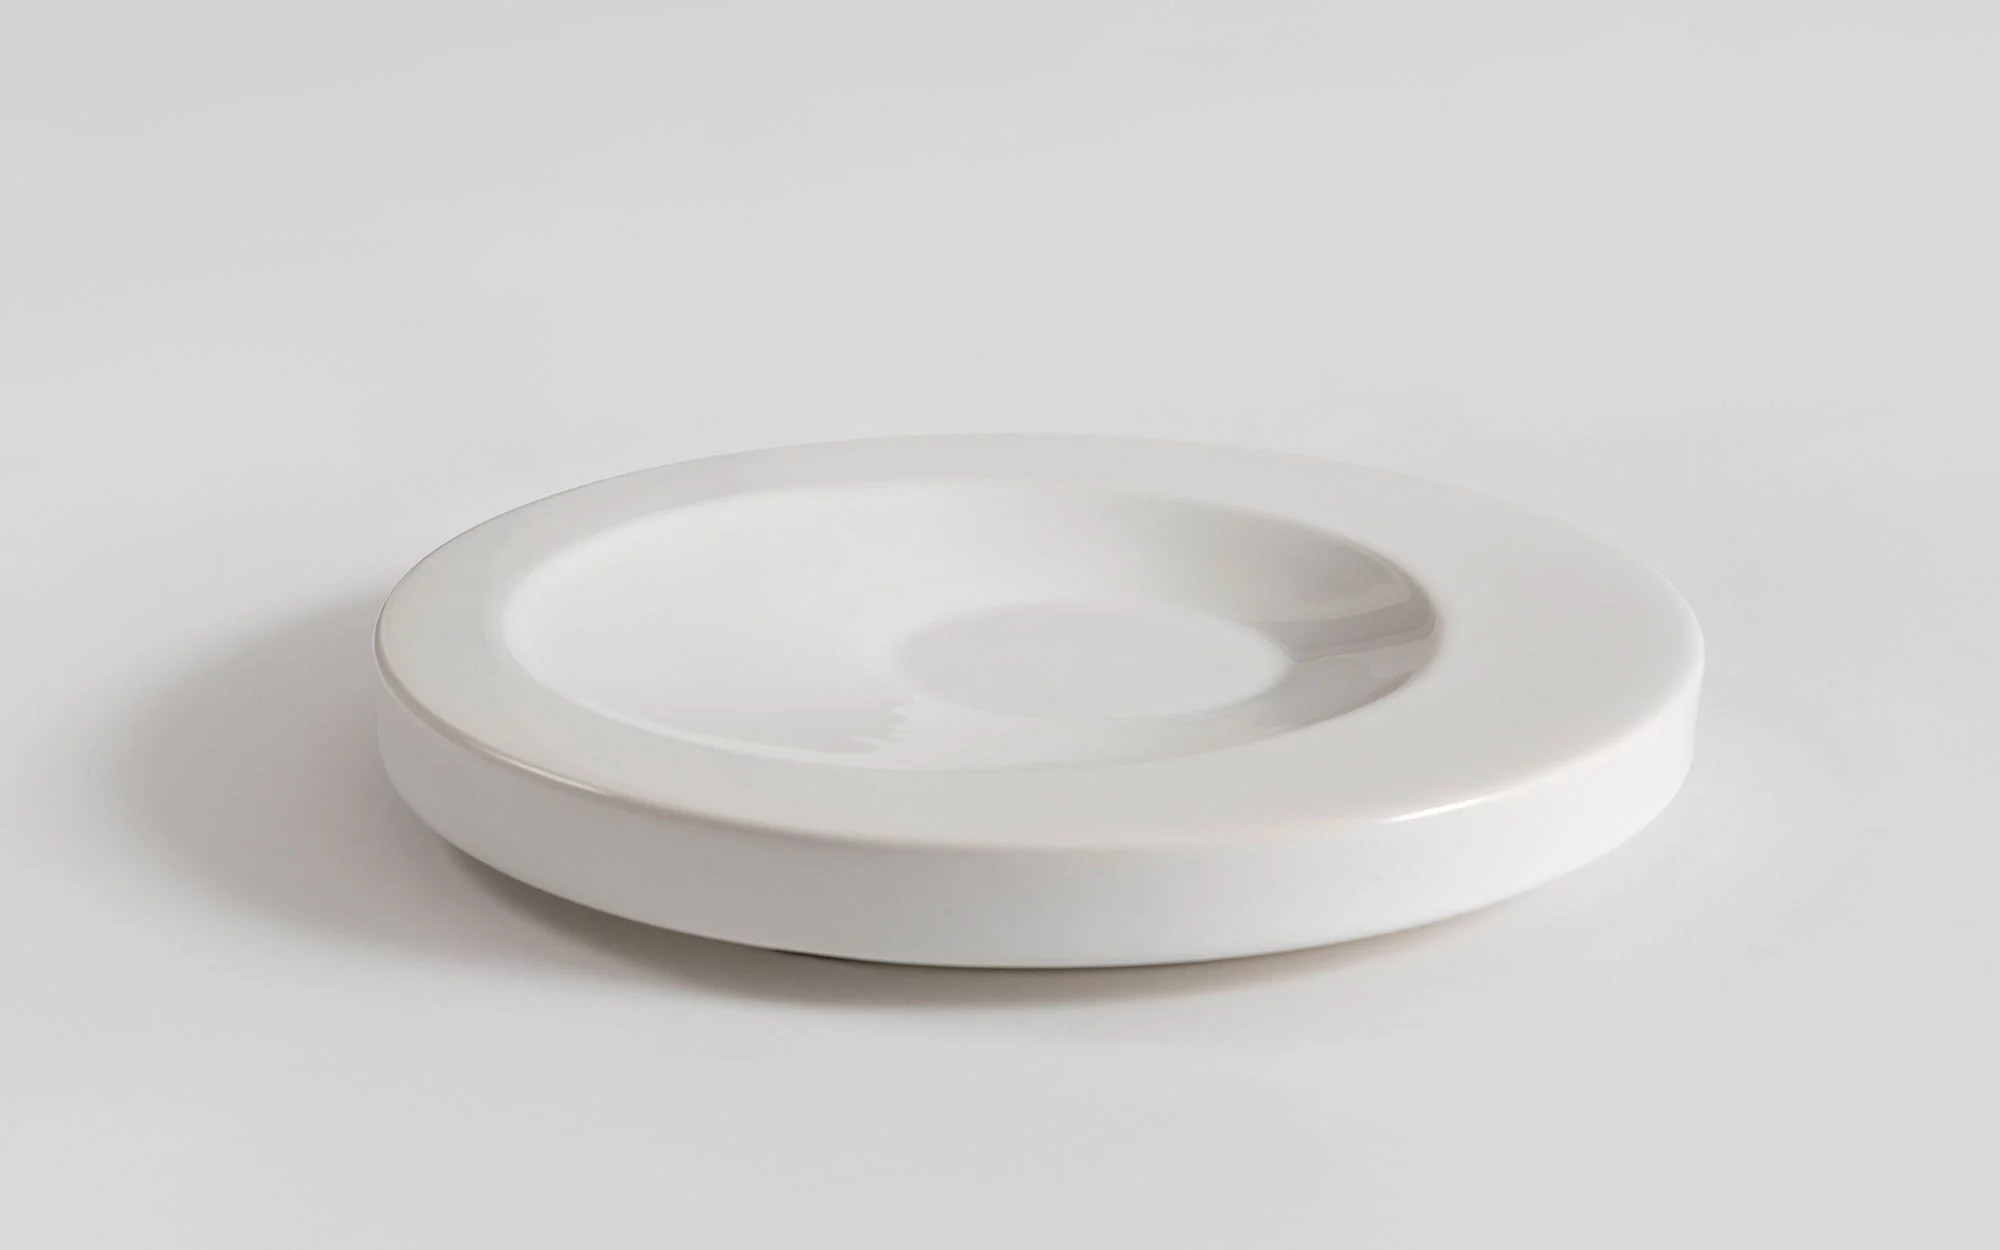 Small Round - Jasper Morrison - Table - Galerie kreo